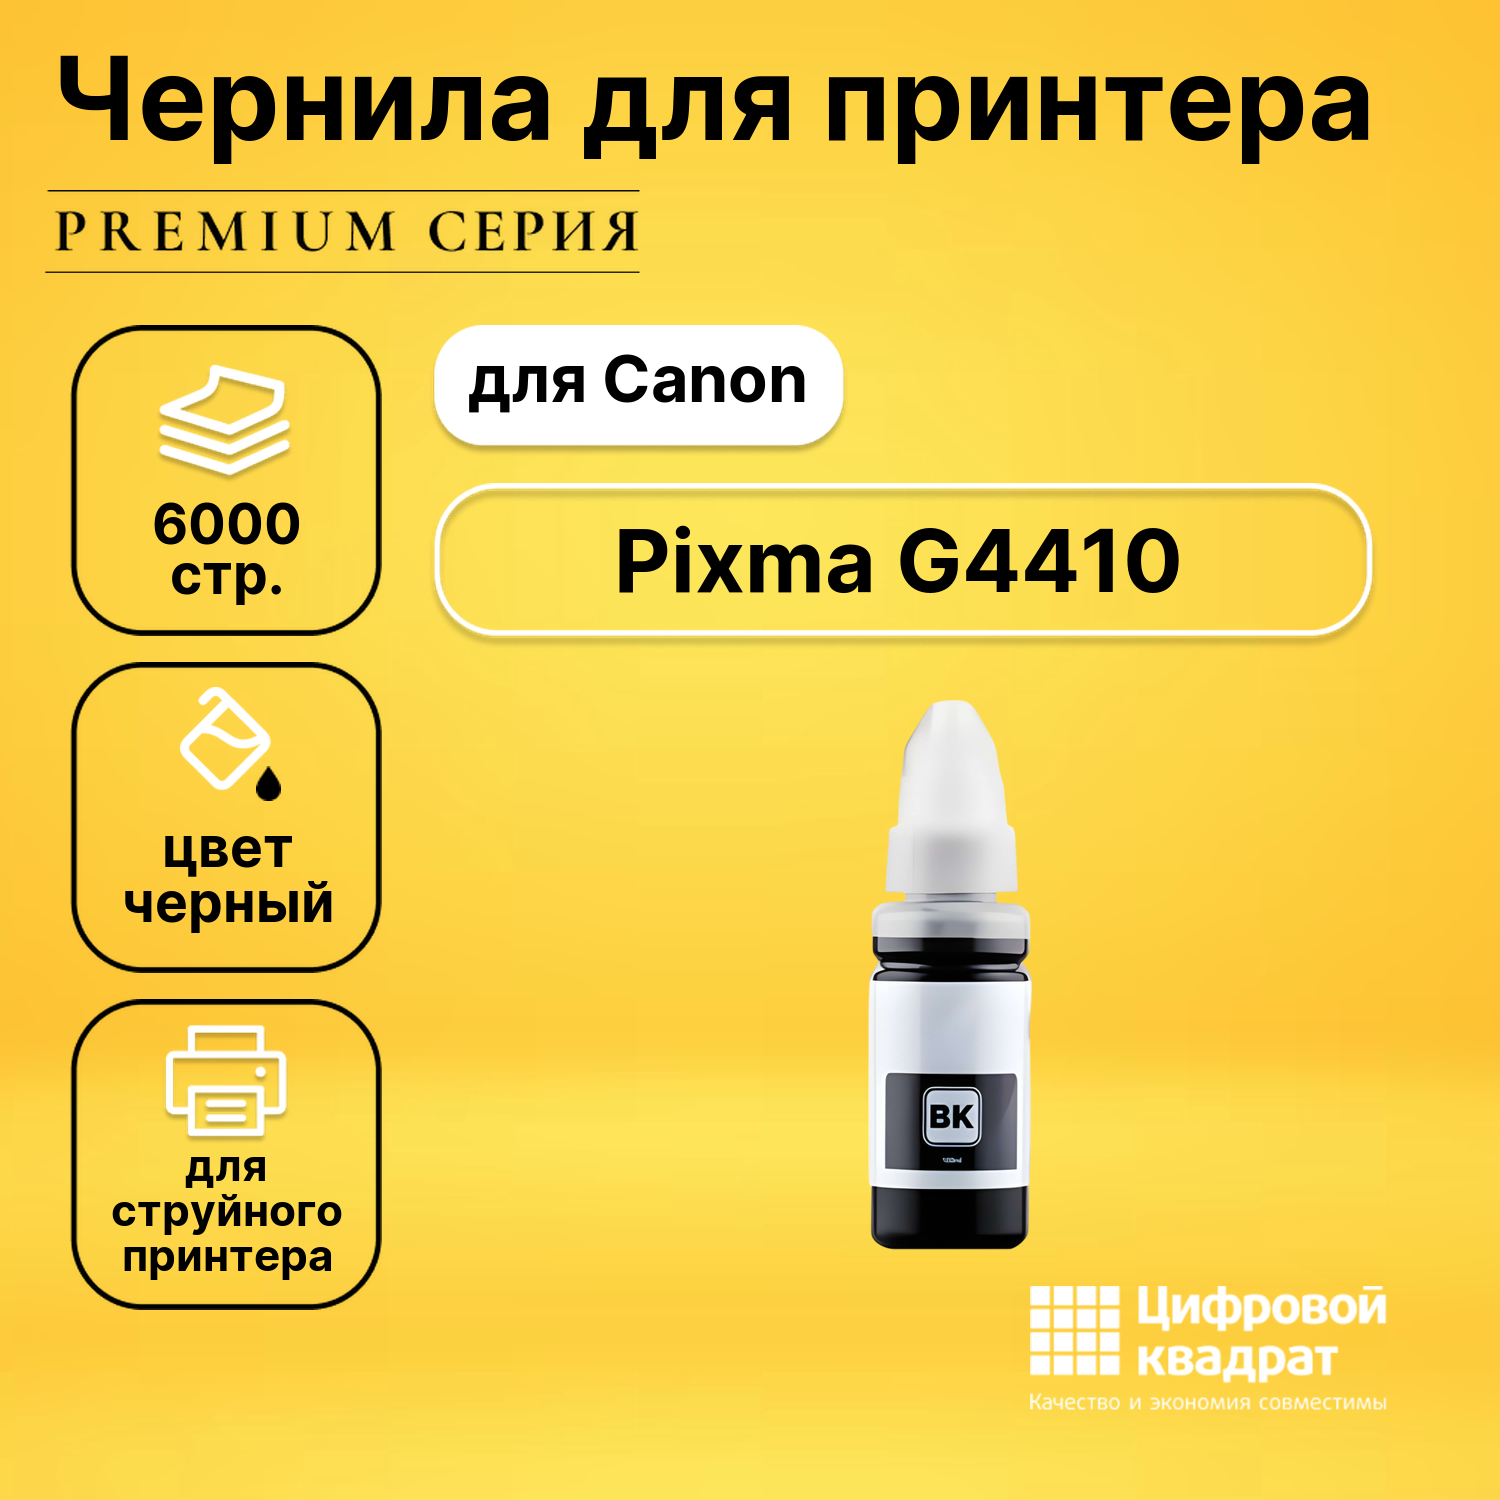 Чернила для Canon Pixma G4410 совместимые